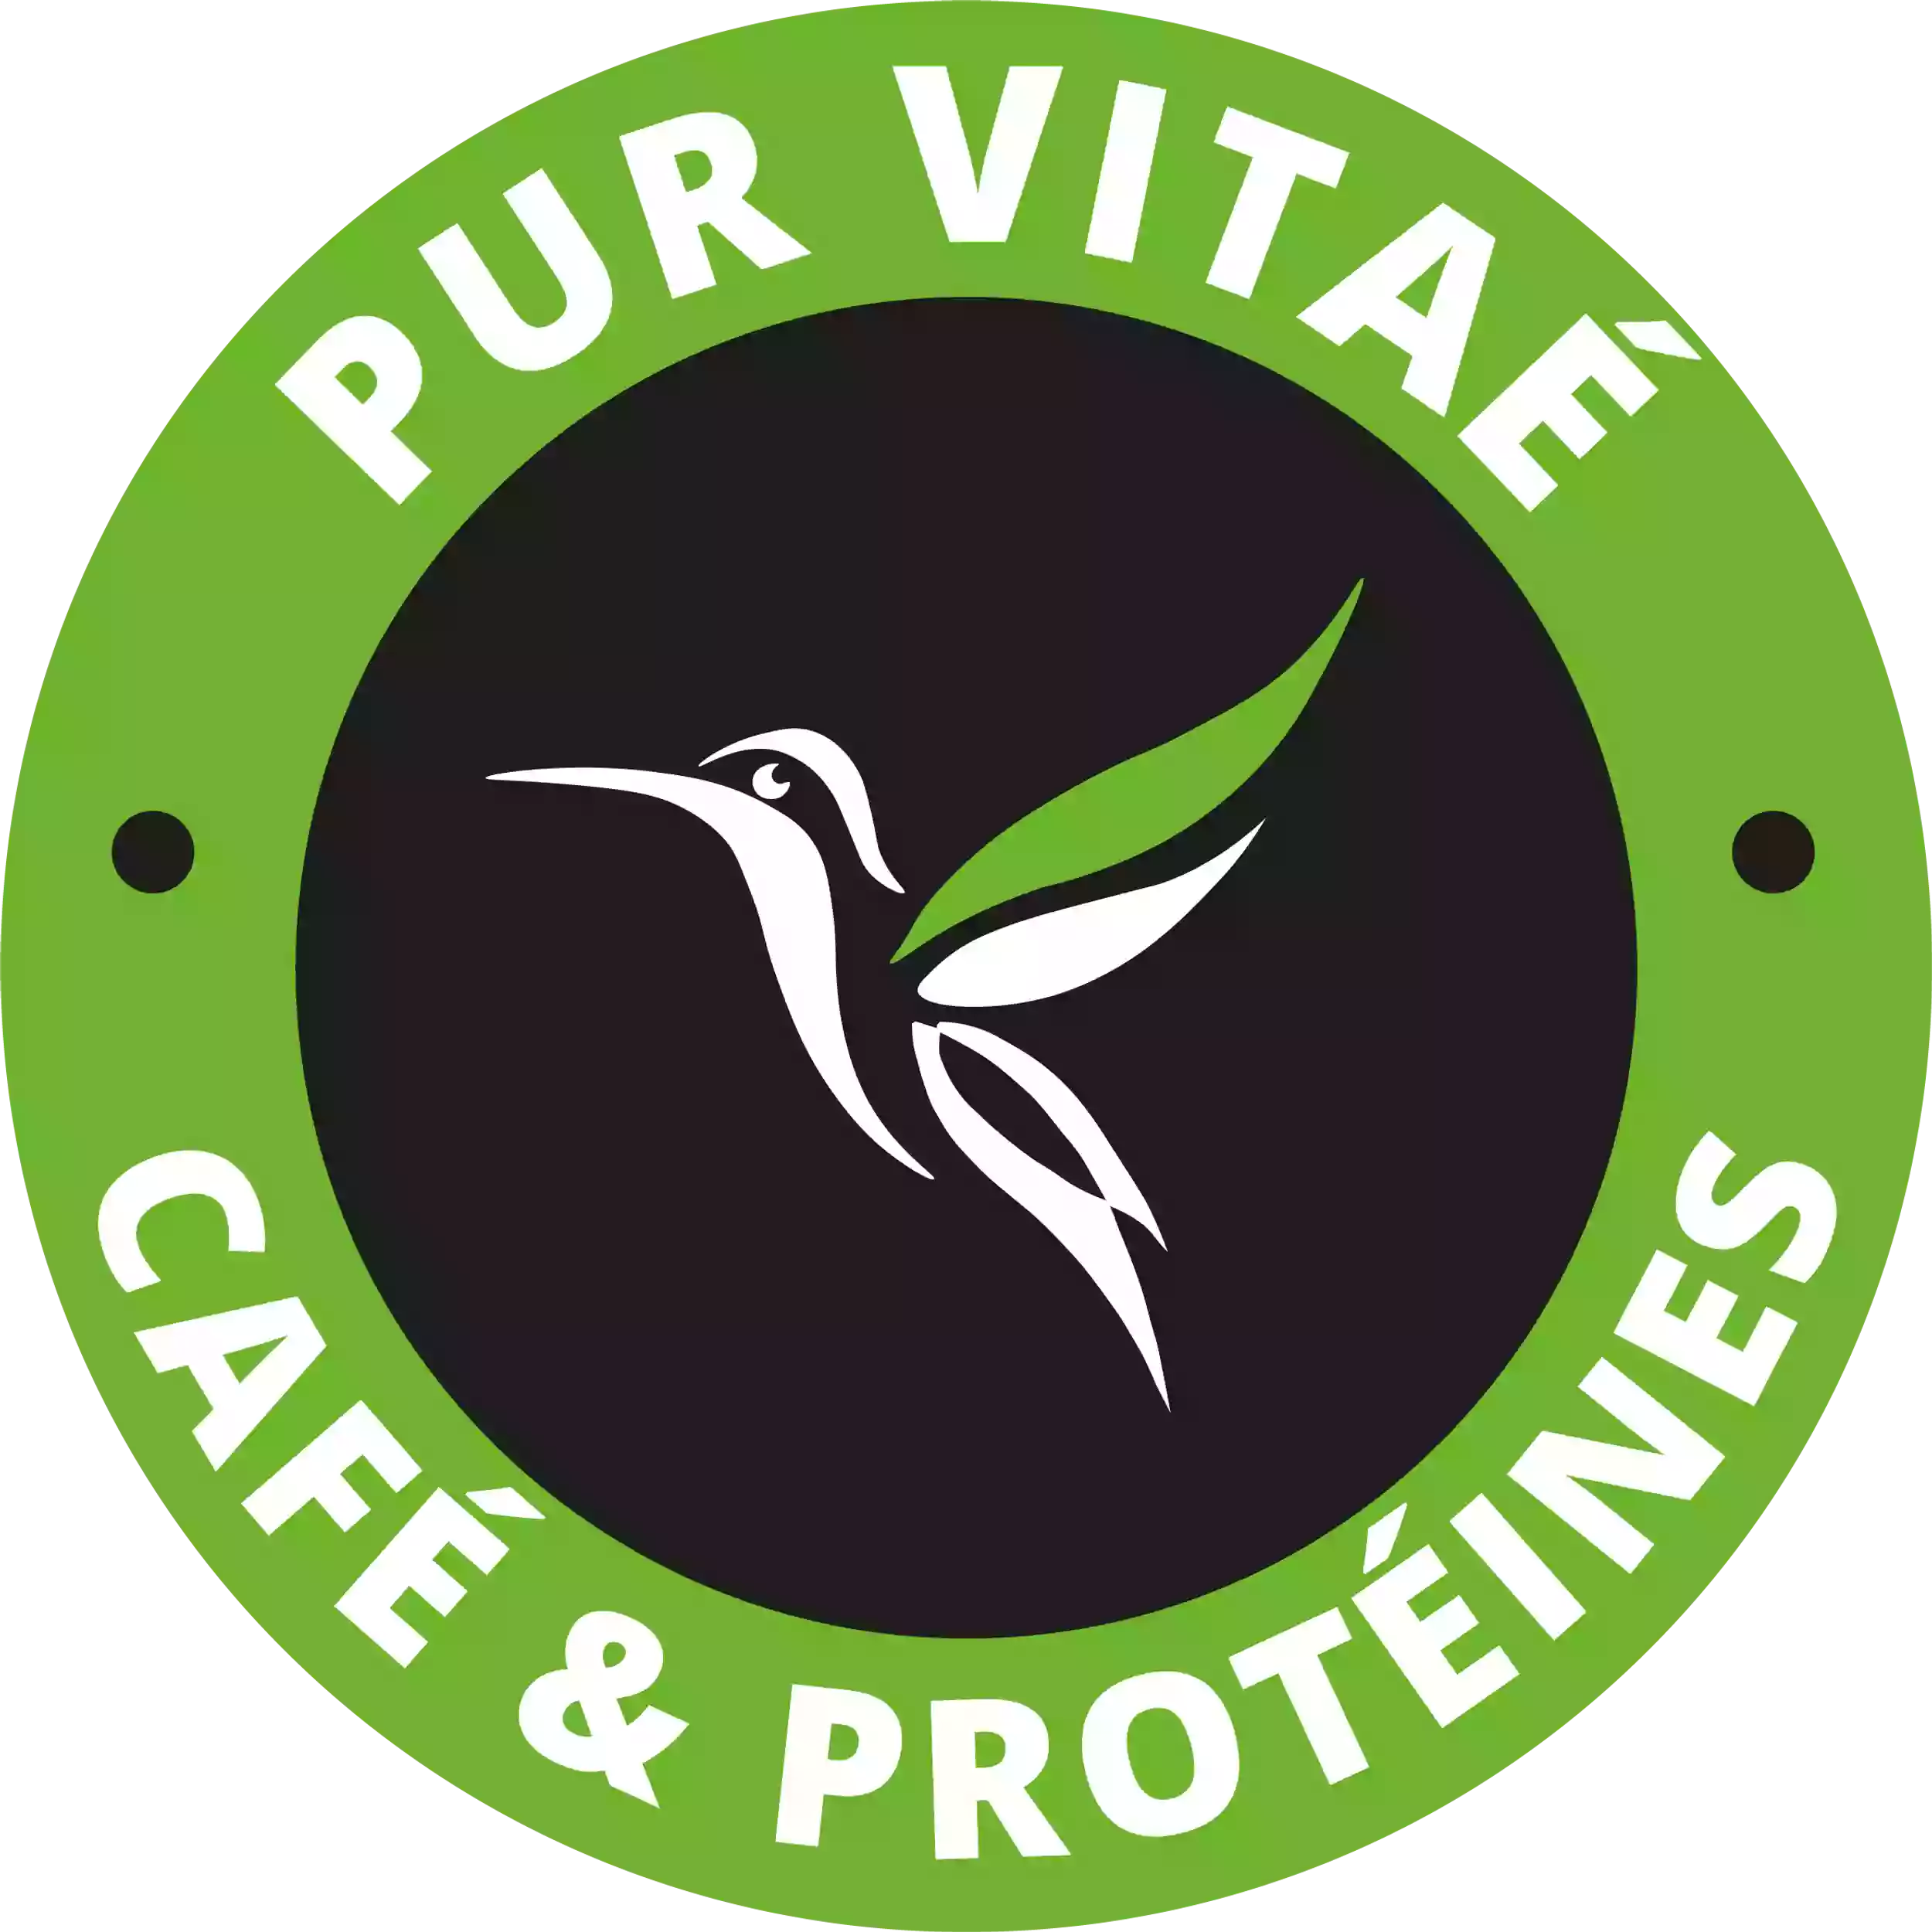 Pur Vitaé Café et Protéines - Lattes, Pérols - Restaurant Healthy